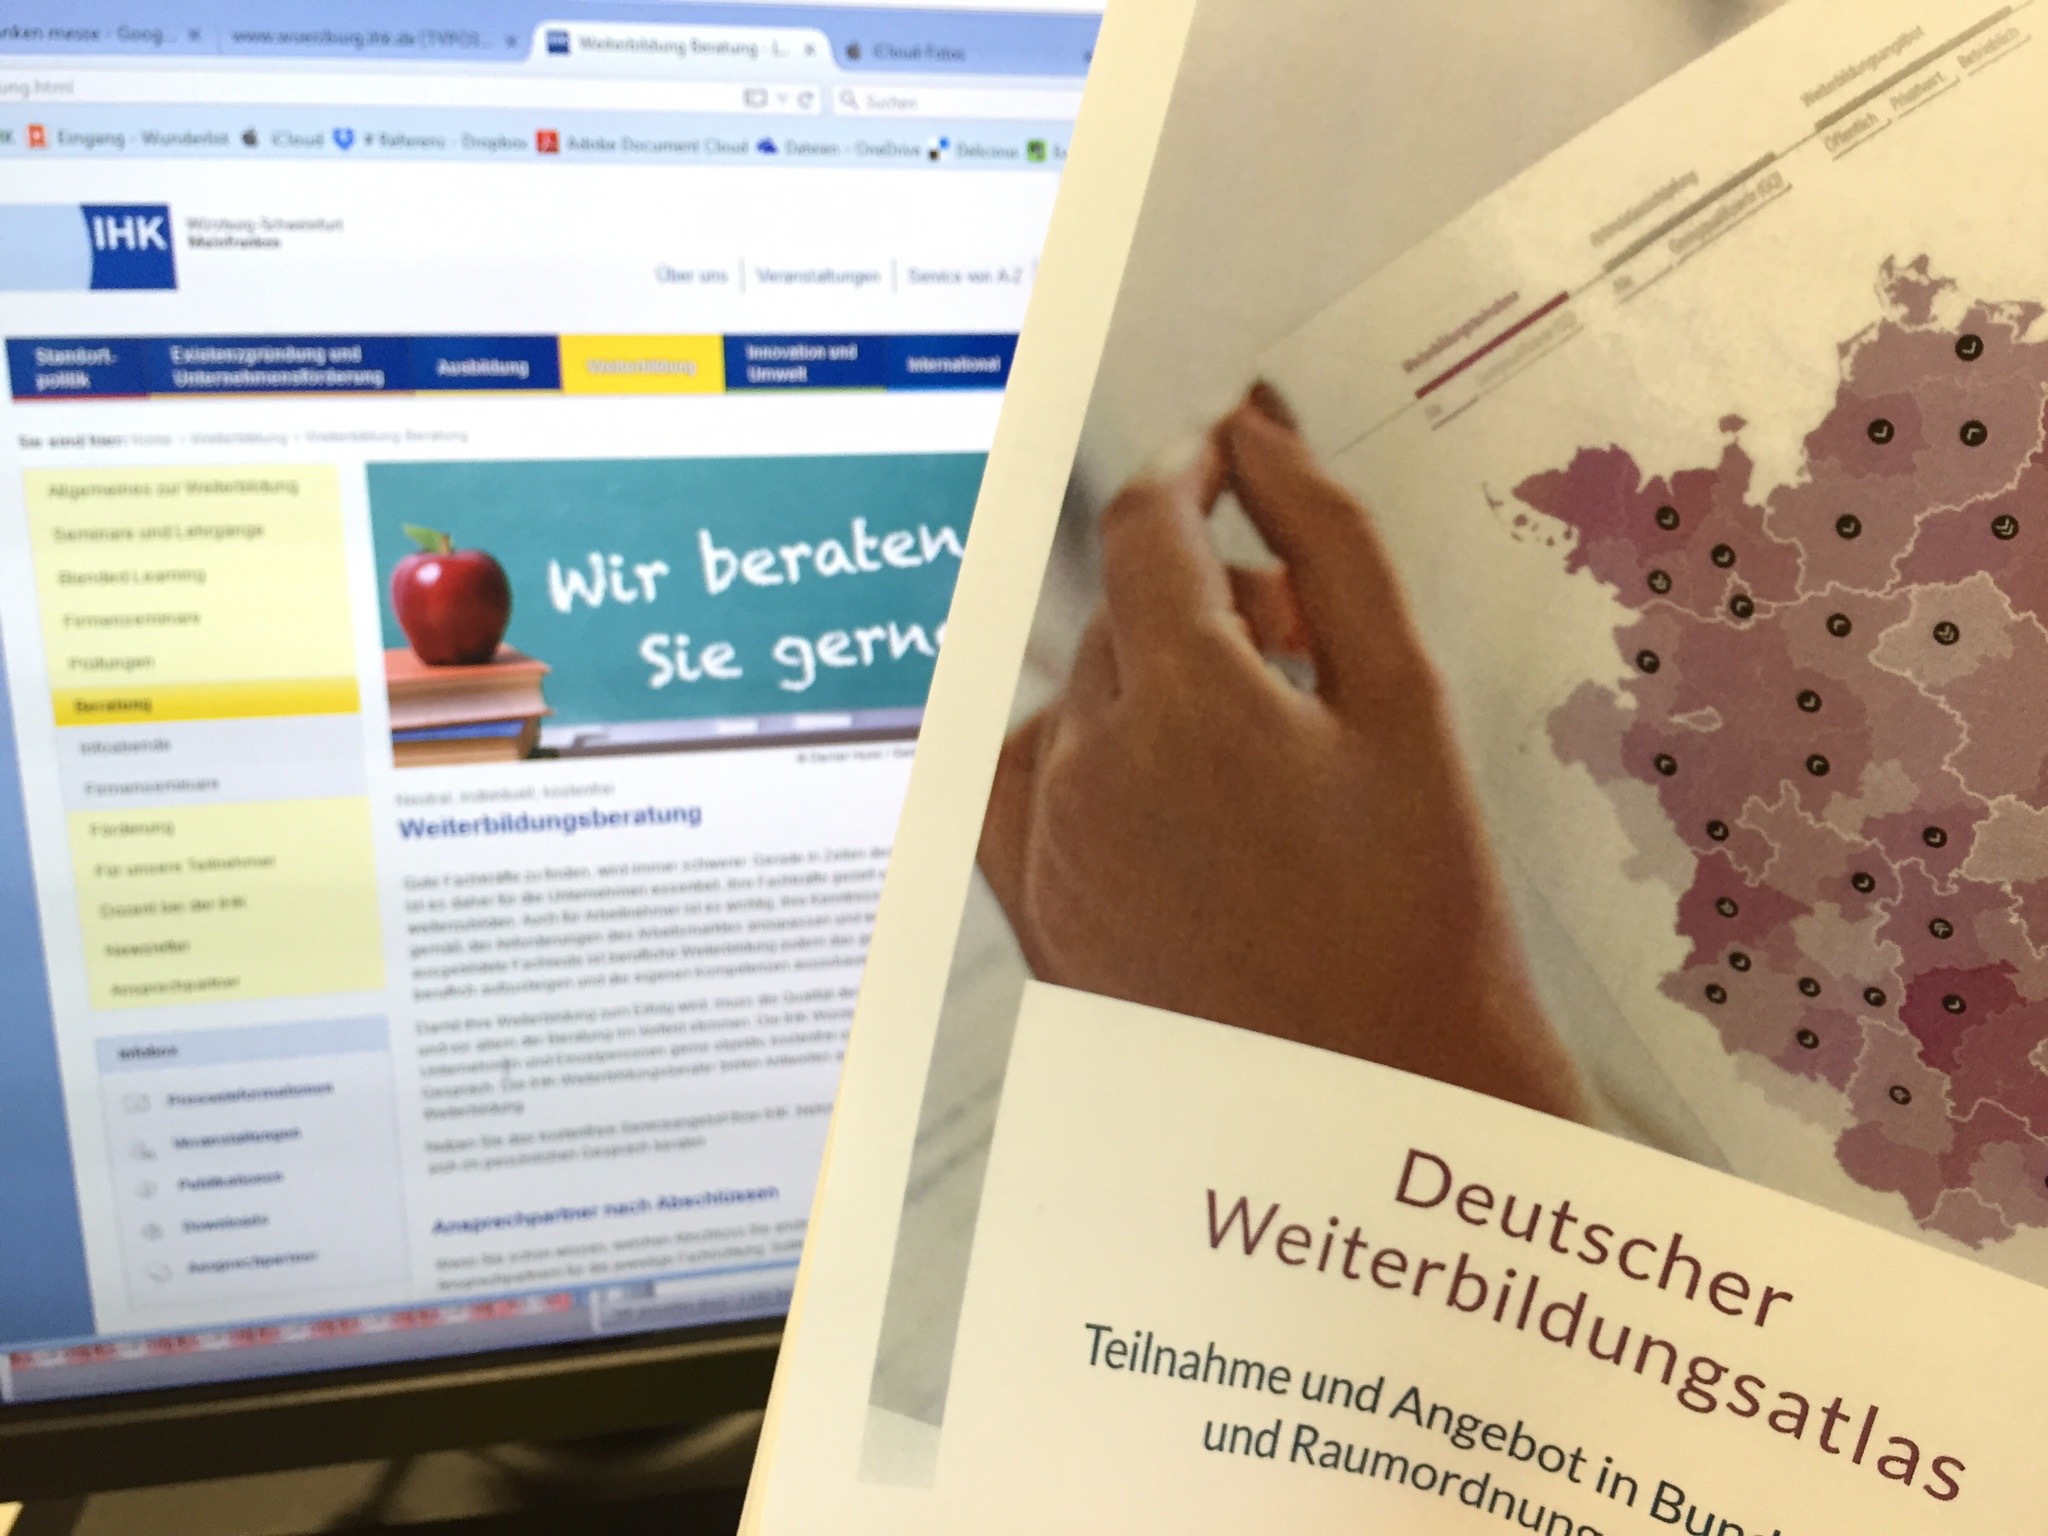 Weiterbildungsatlas: Würzburg Nummer 1 in Deutschland in Sachen Weiterbildung